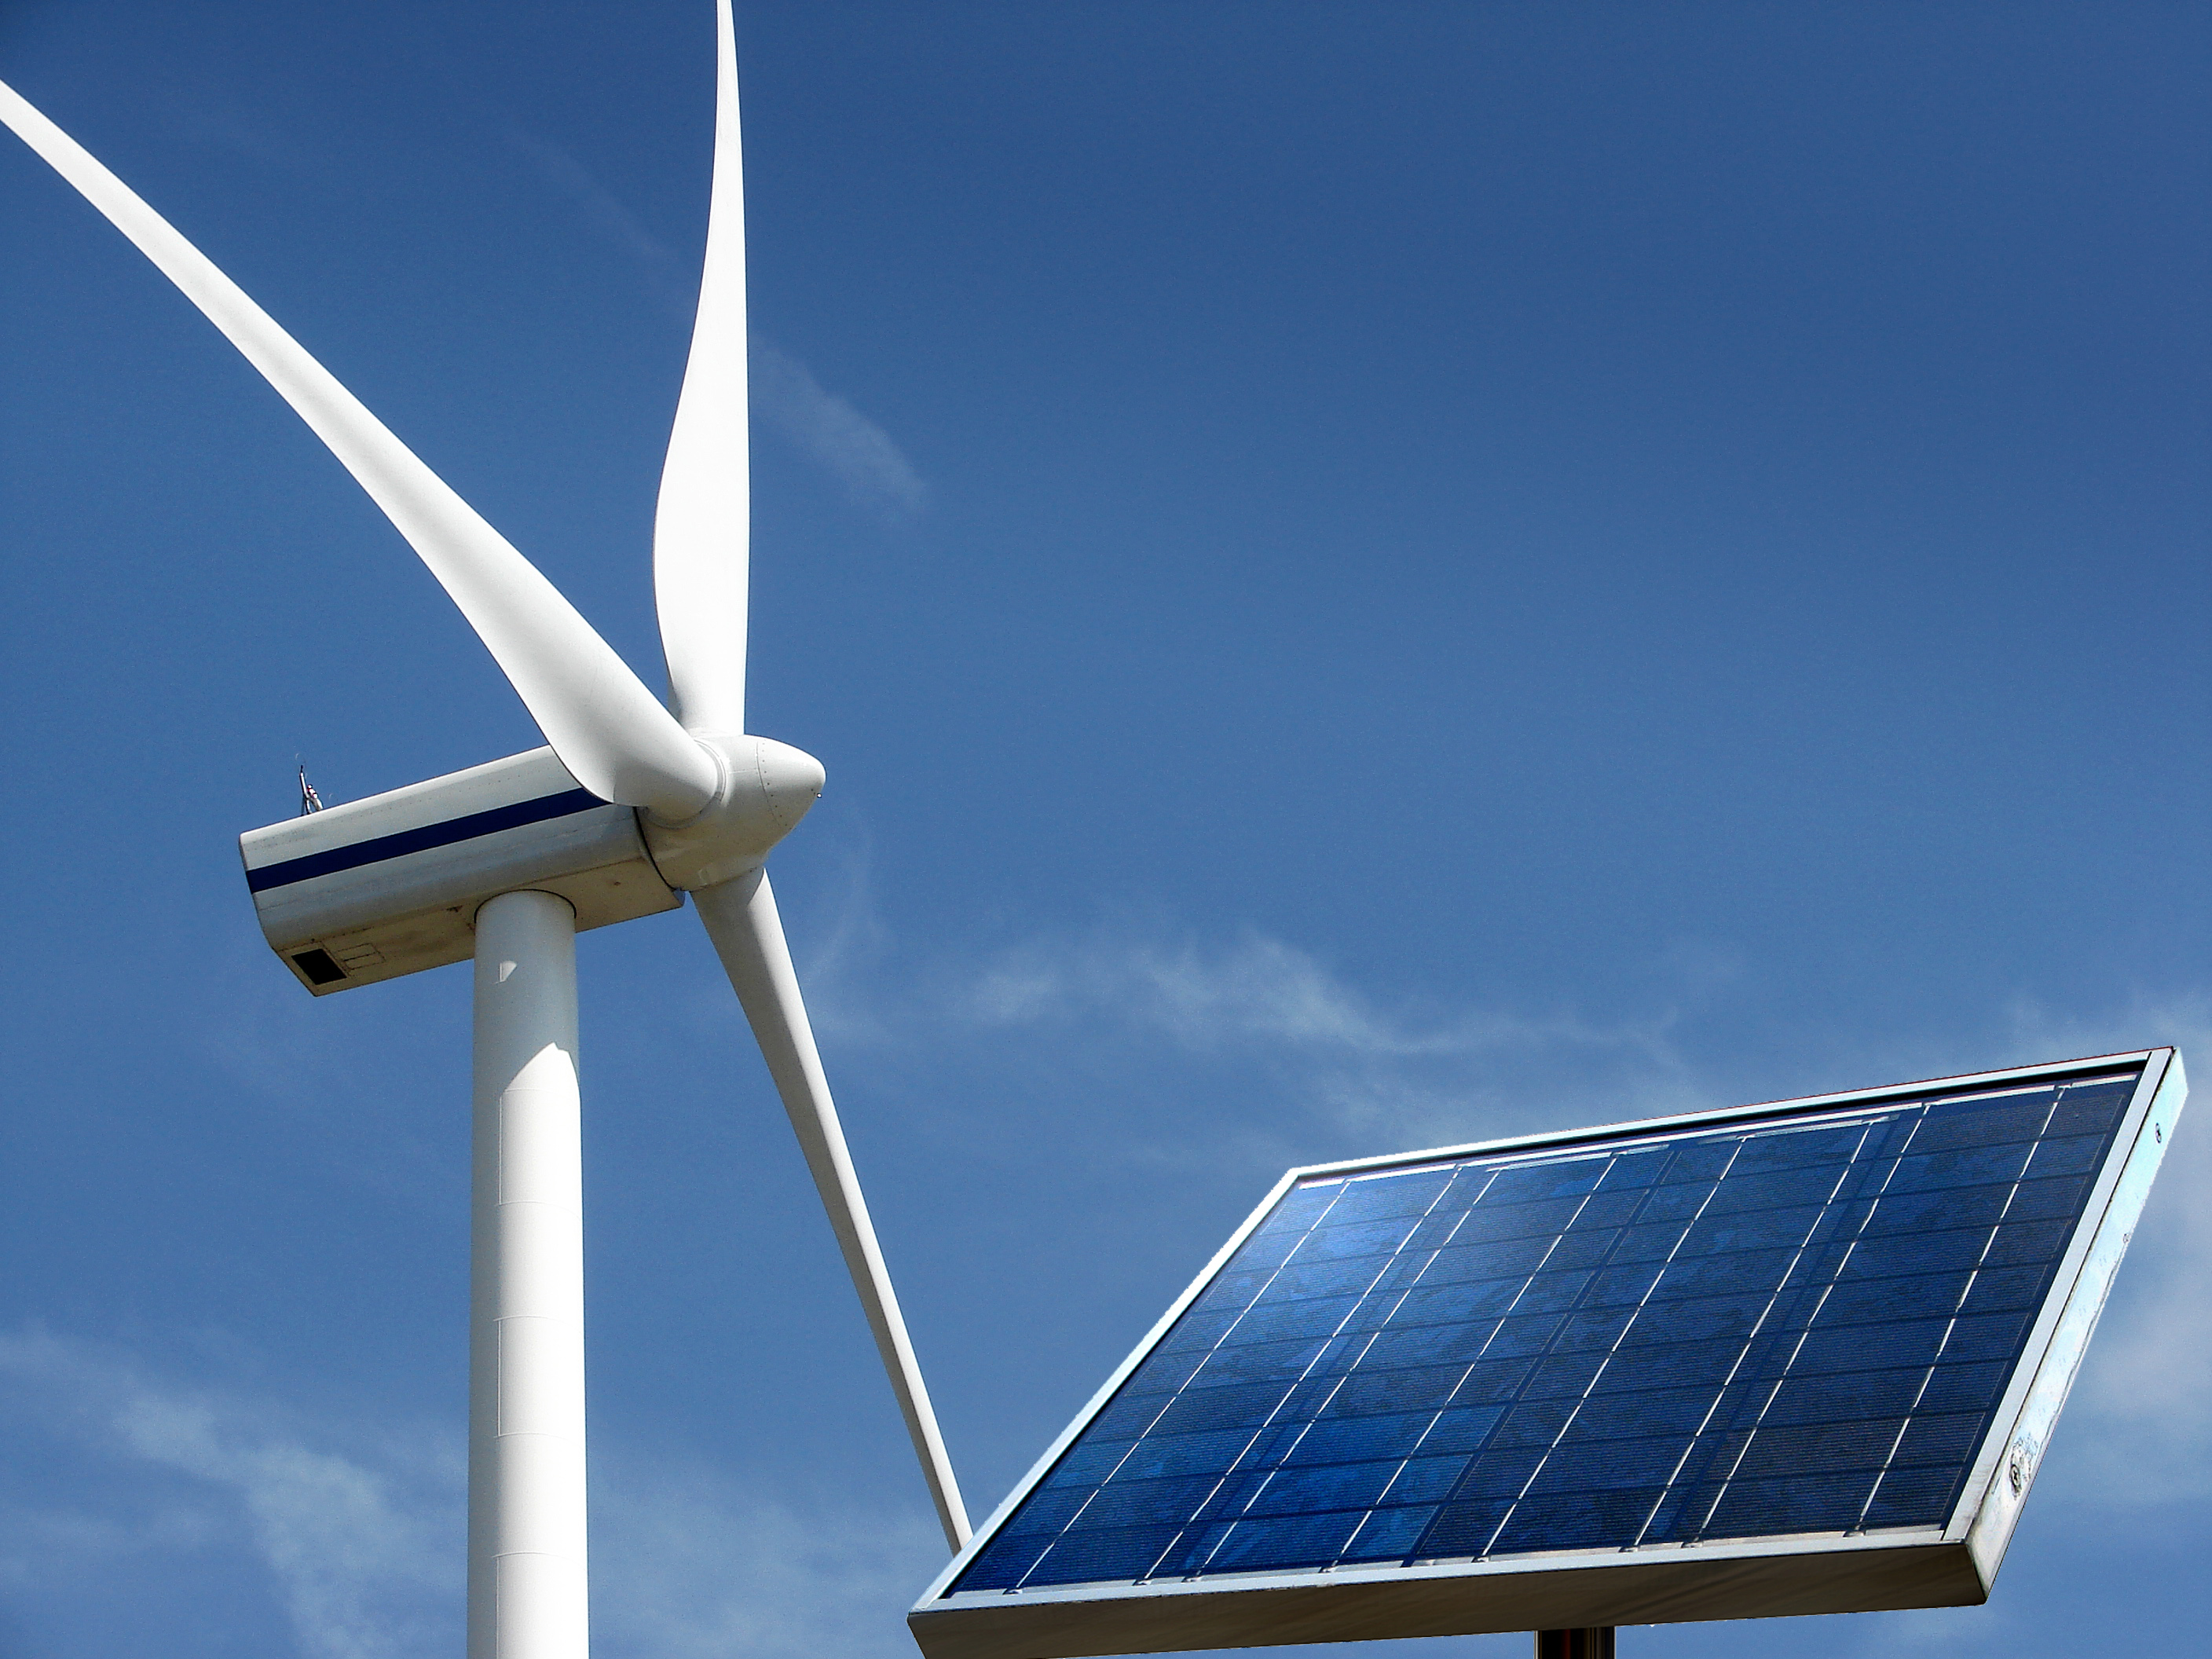 Irena espera duplicar aportación mundial de energías renovables: eólica, geotérmica, termosolar y energía solar fotovoltaica